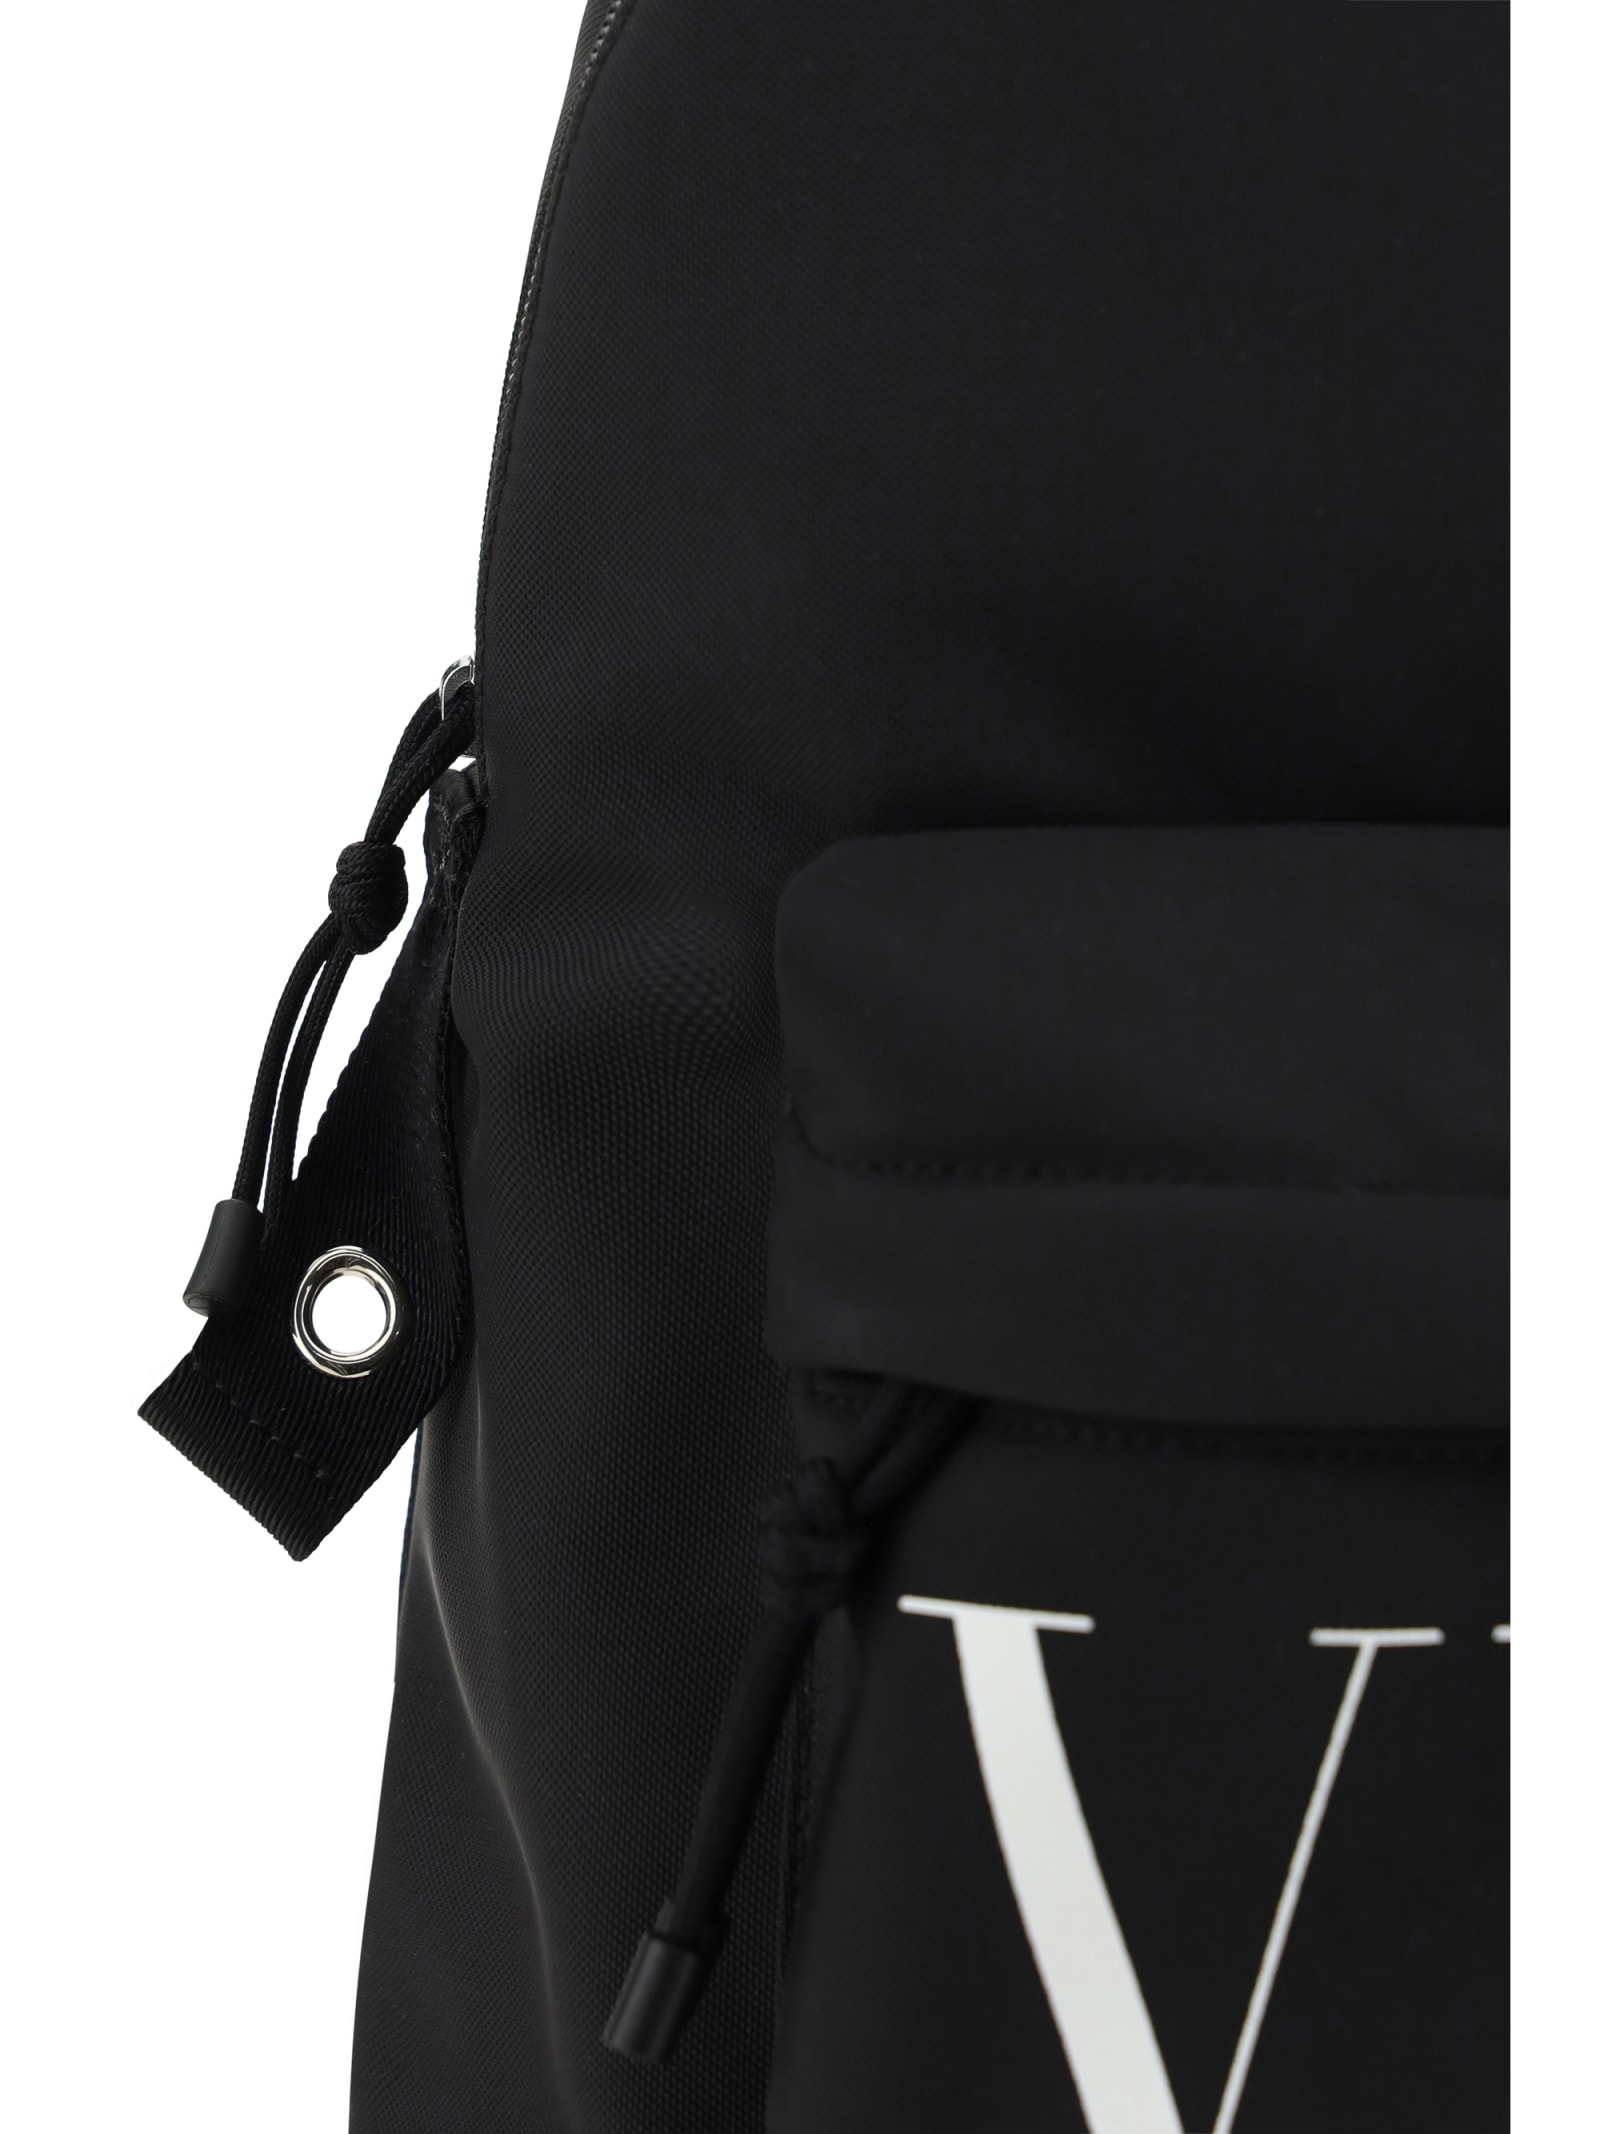 Shop Valentino Vltn Backpack In Nero/bianco